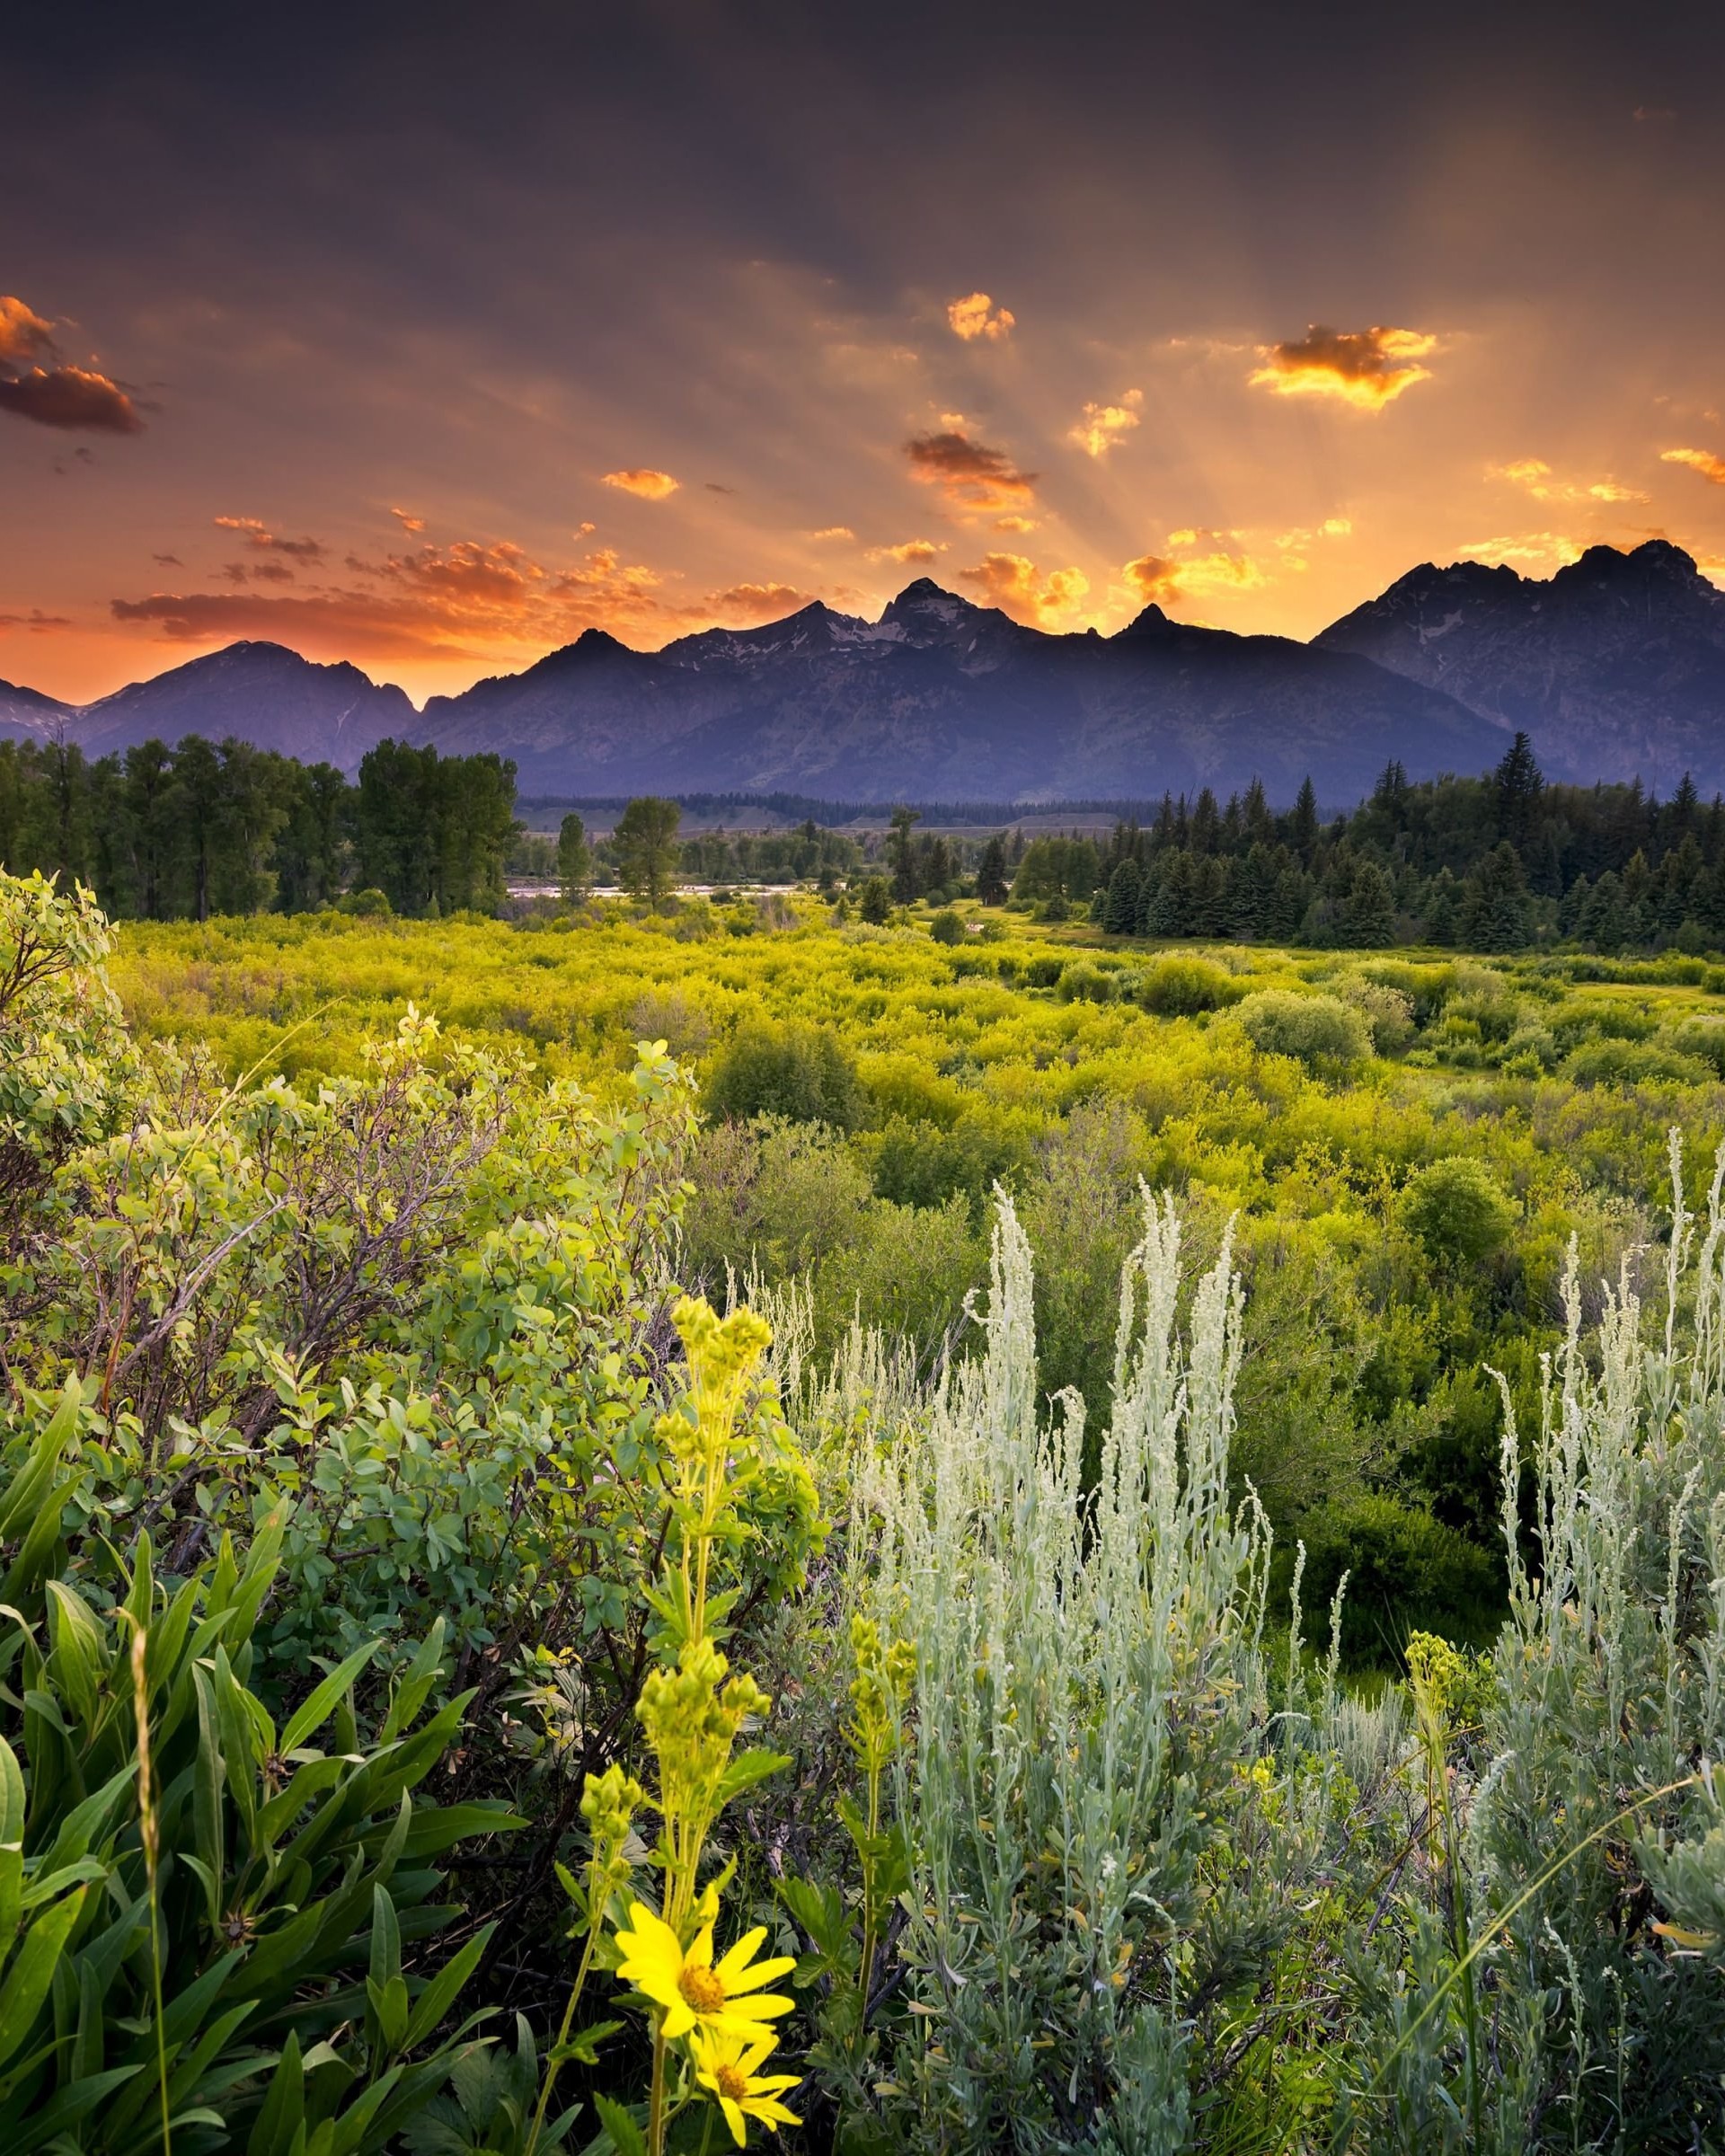 Sunset in Grand Teton National Park Wallpaper for Google Nexus 7